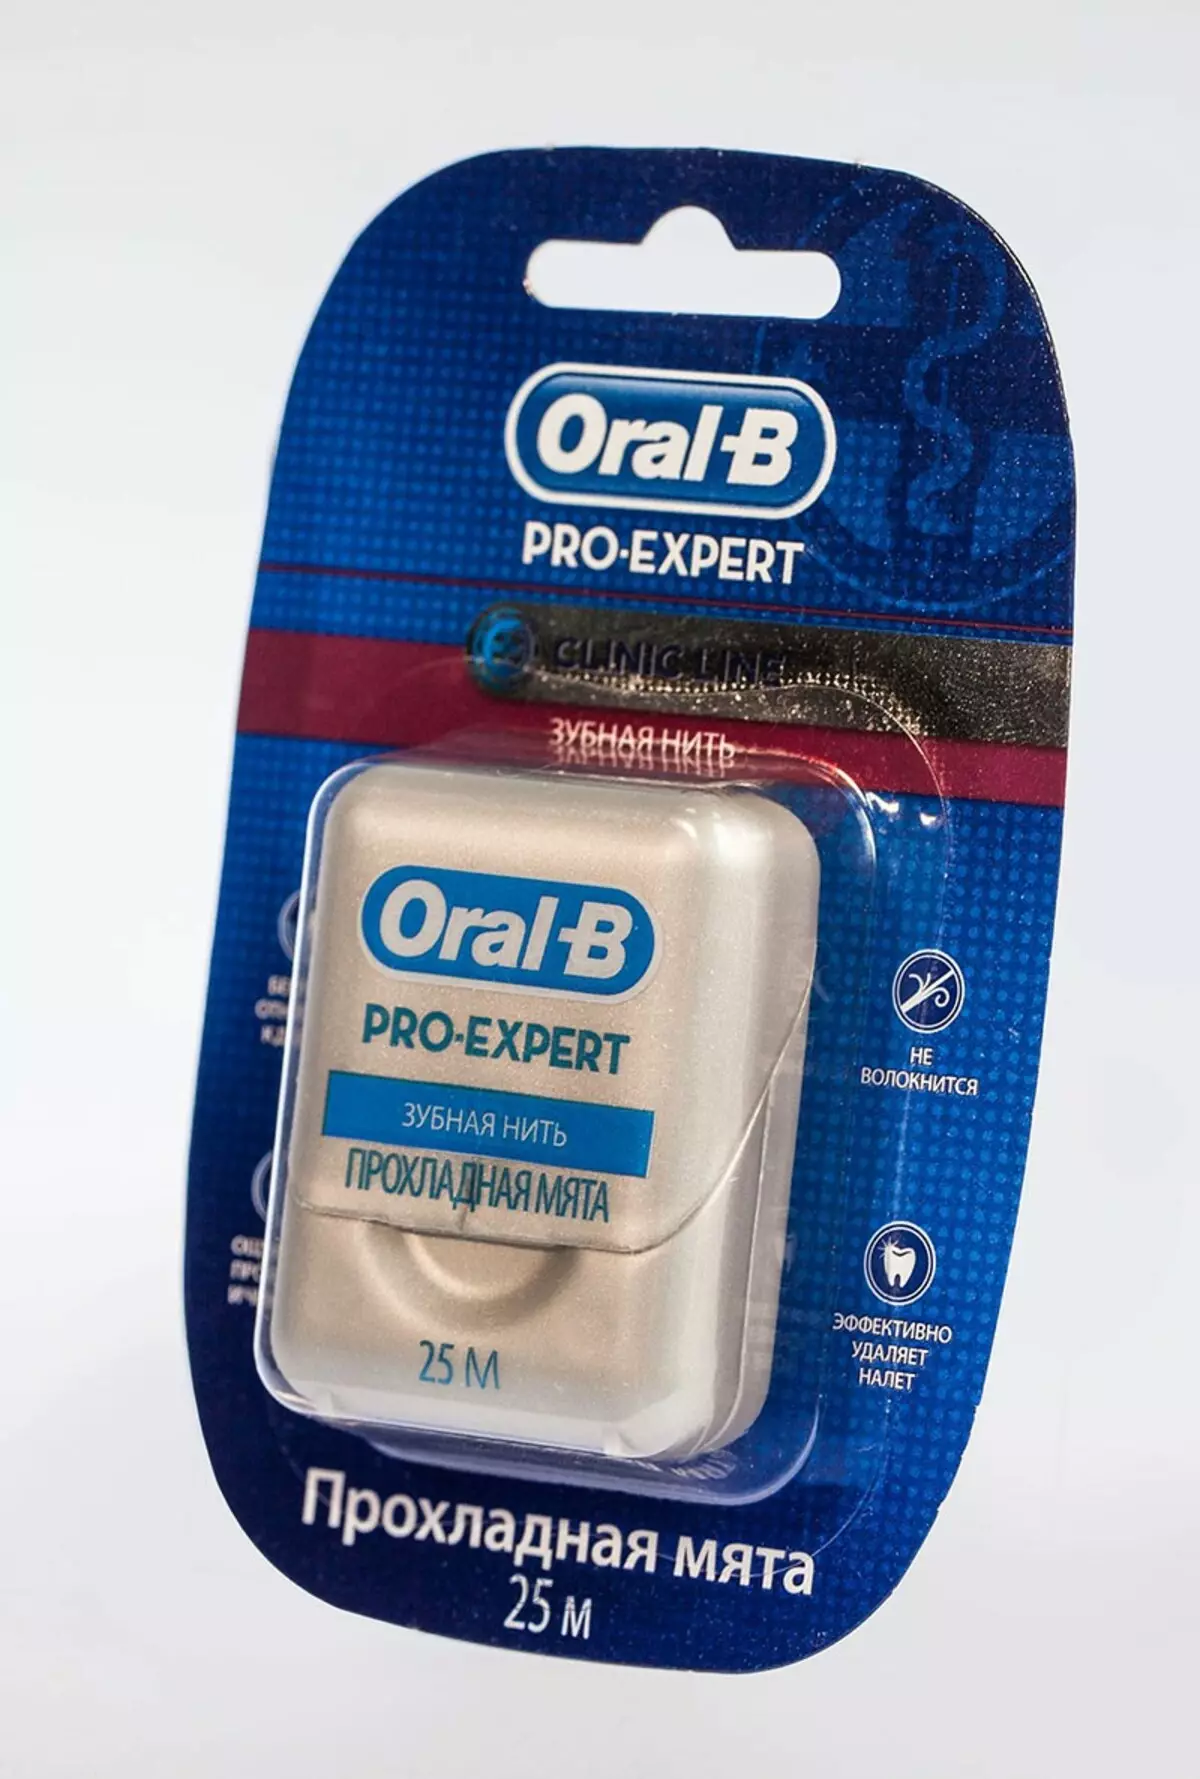 Oral-B Ատամնաբուժական թելեր. Ինչպես օգտագործել դրանք: Pro-Expert Clinic Line եւ Super Floss, Essential Floss եւ Satin Floss, Waxing եւ Unworn Thread: Ինչպես բացել դրանք: 23988_10